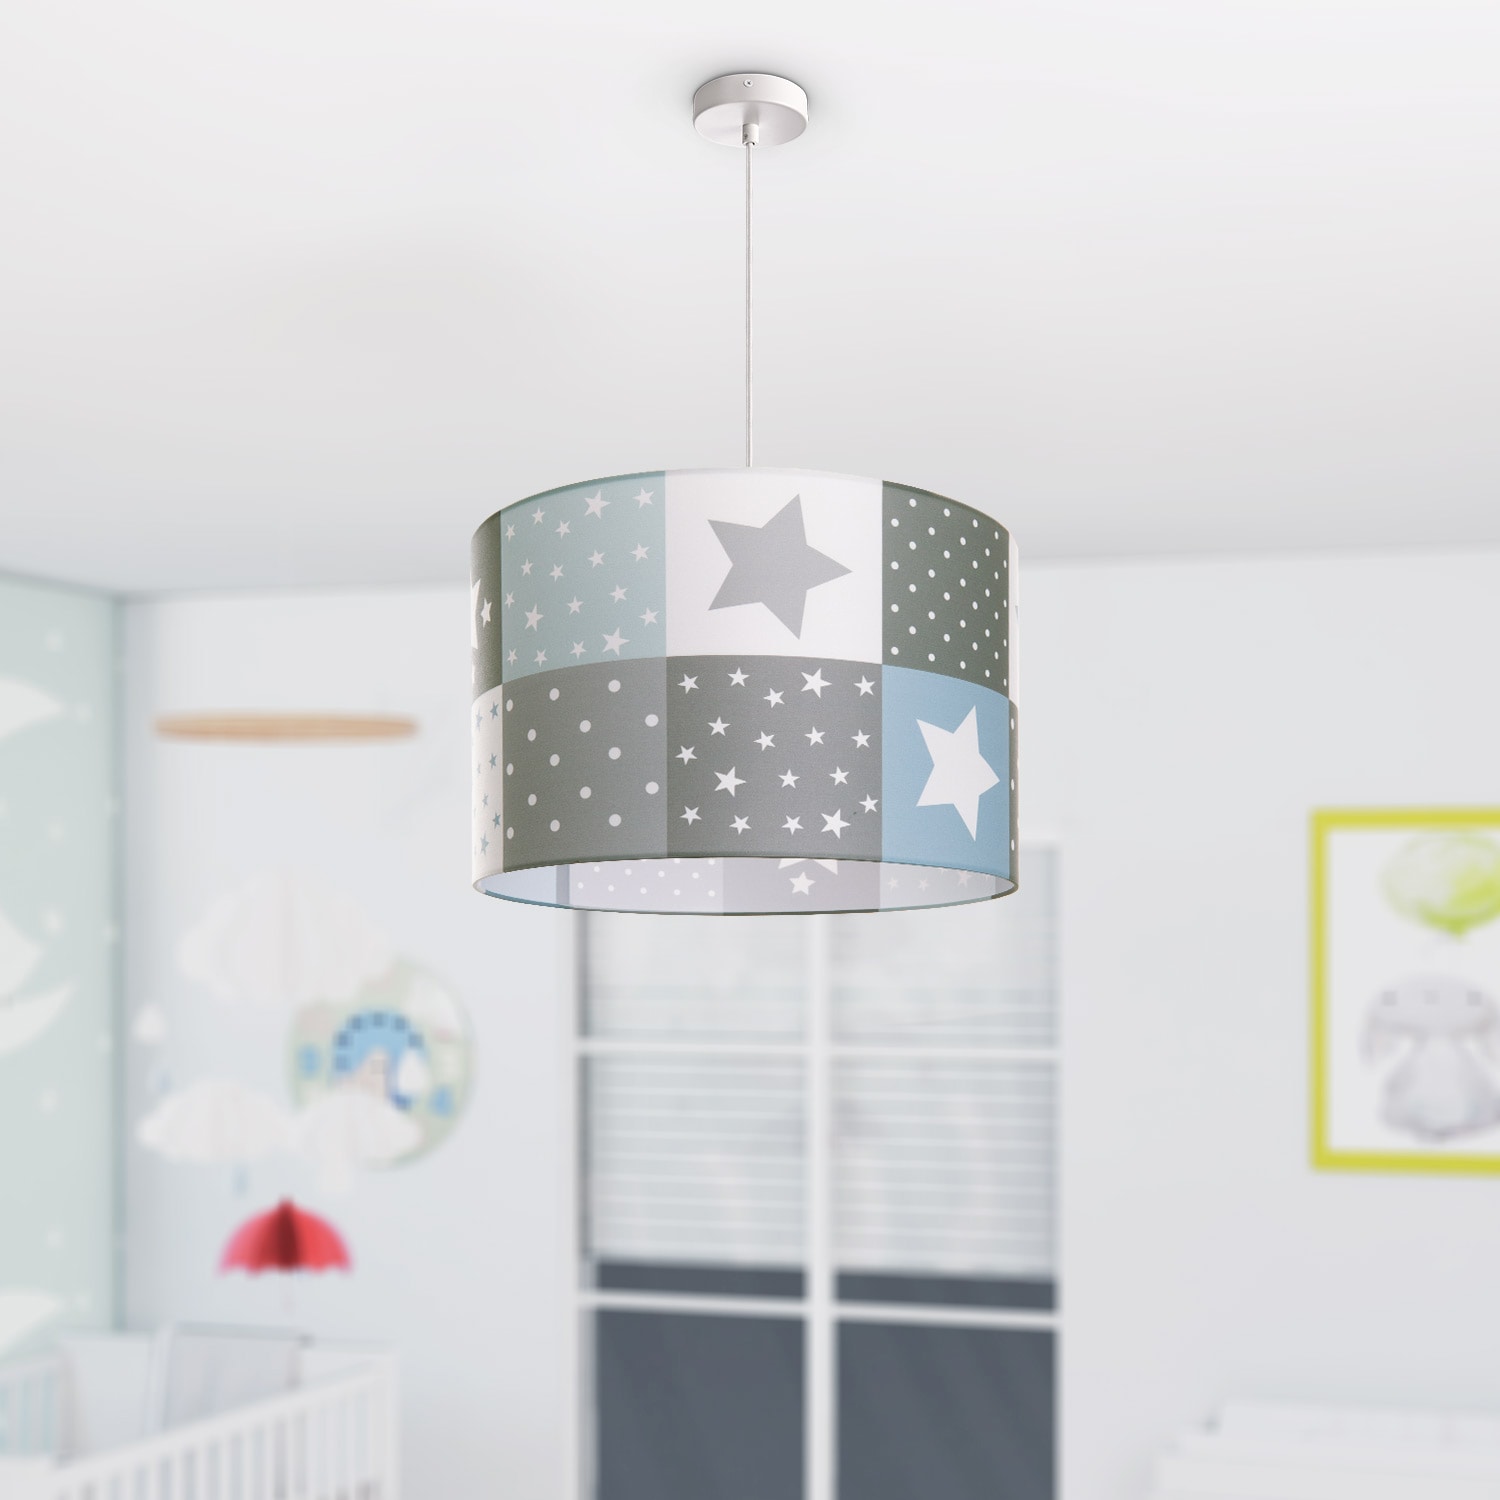 Paco Home »Cosmo flammig-flammig, kaufen Kinderlampe E27 Deckenlampe mit Sternen online Garantie LED Pendelleuchte 345«, 1 Kinderzimmer XXL 3 Motiv | Lampe Jahren